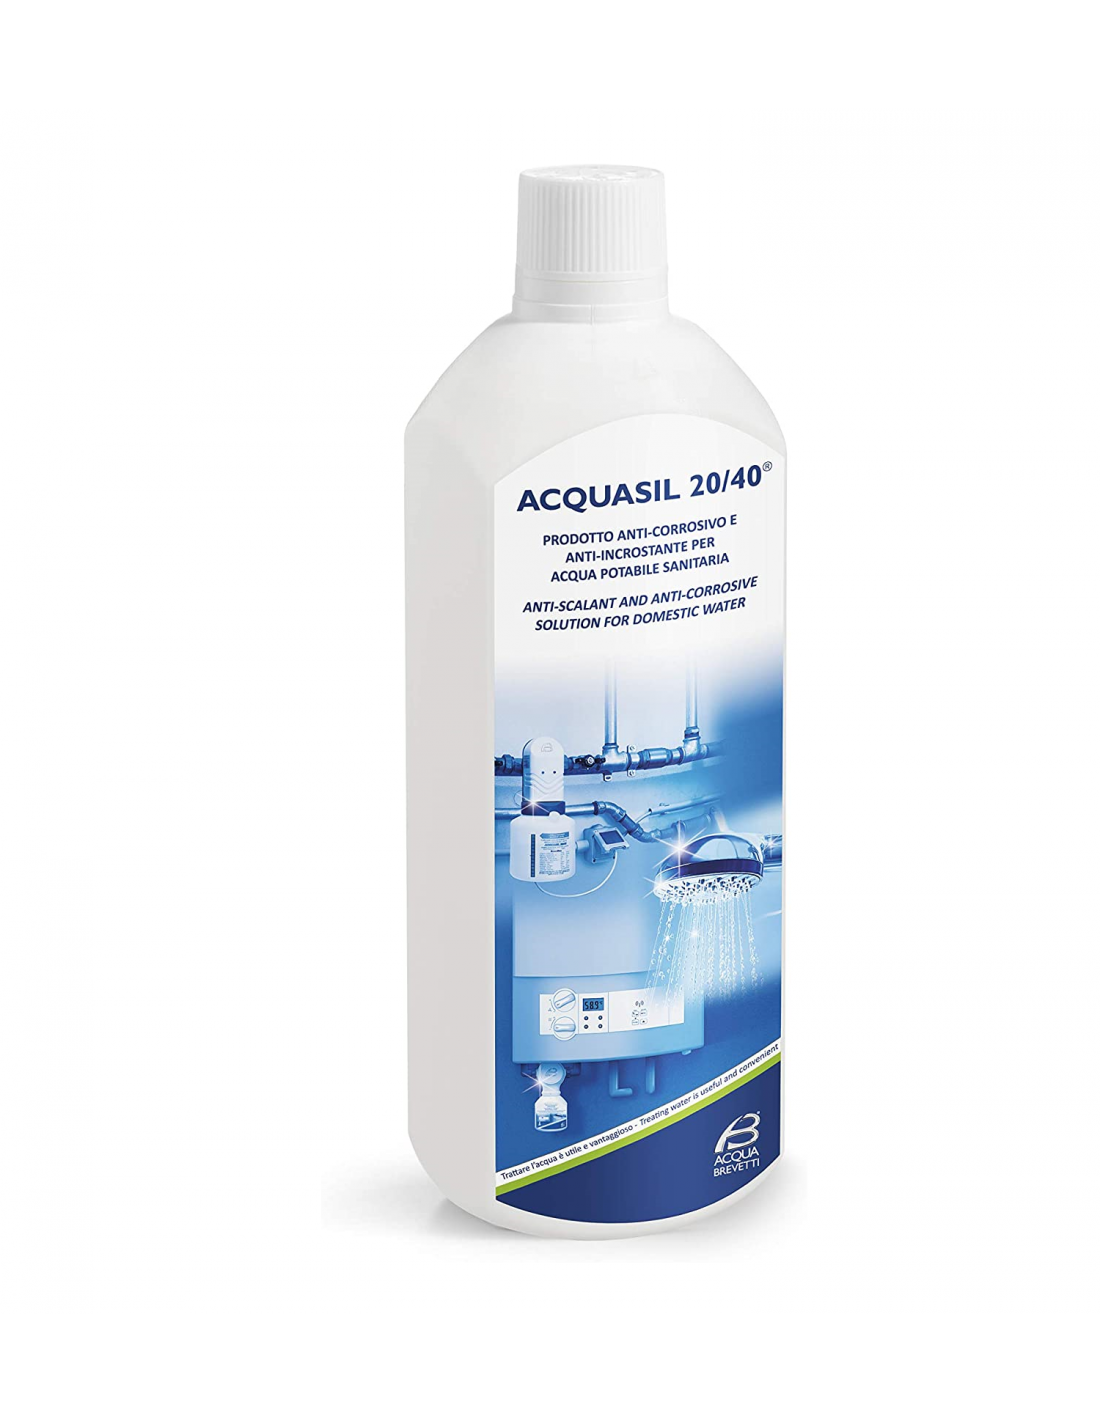 Polifosfato liquido Acquasil 20/40 Acquabrevetti anticalcare per